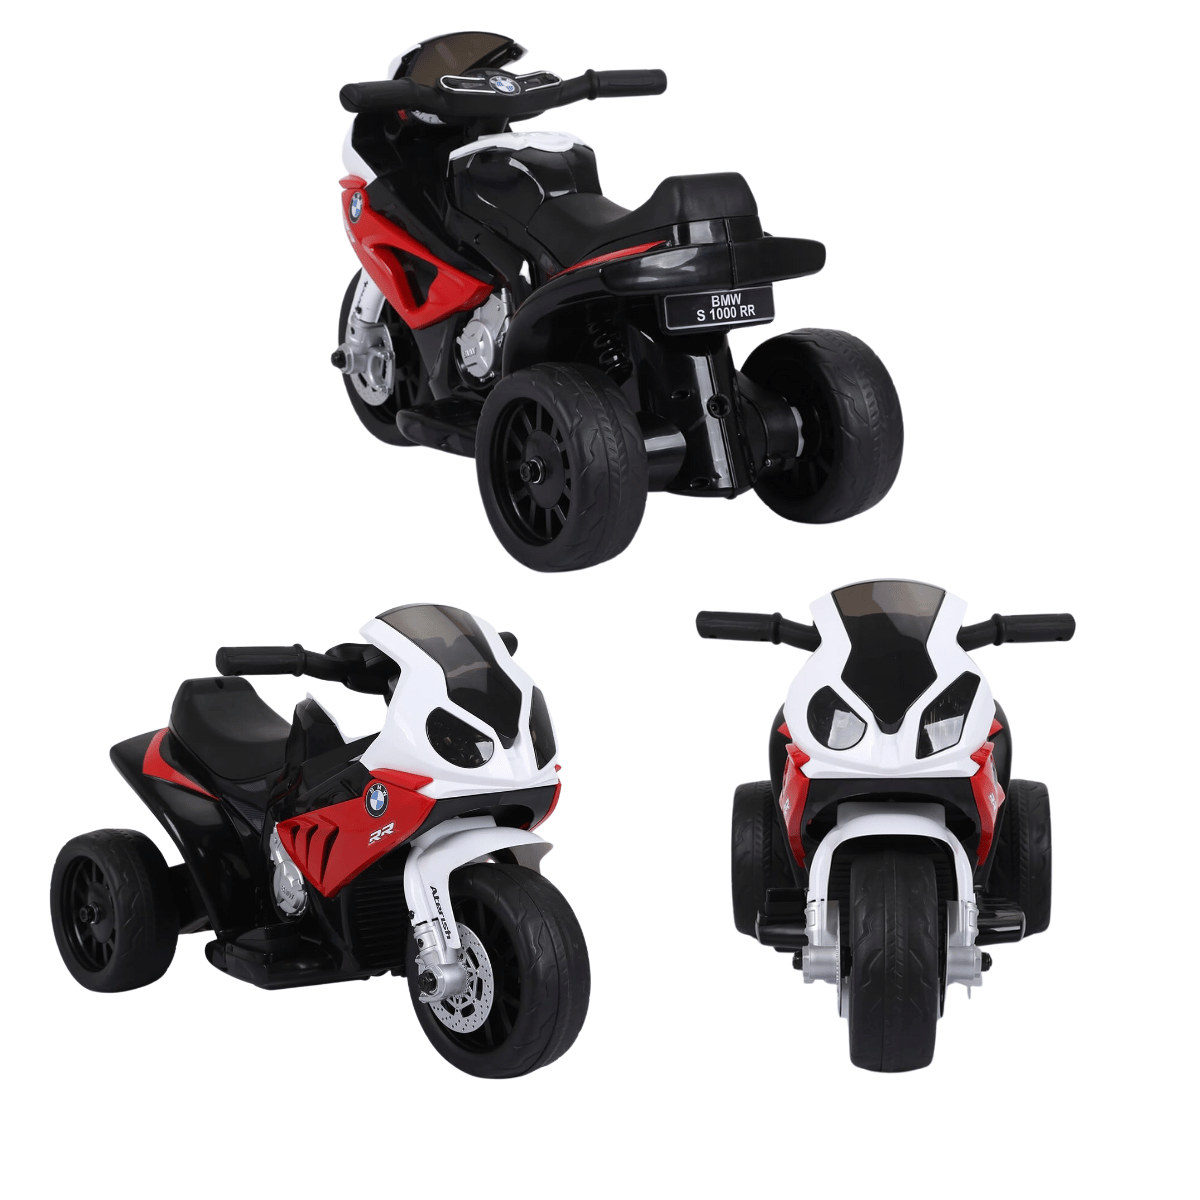 Mini Moto Triciclo Elétrica Infantil Bmw S1000rr Vermelha Esportiva 6v Zippy Toys - 5